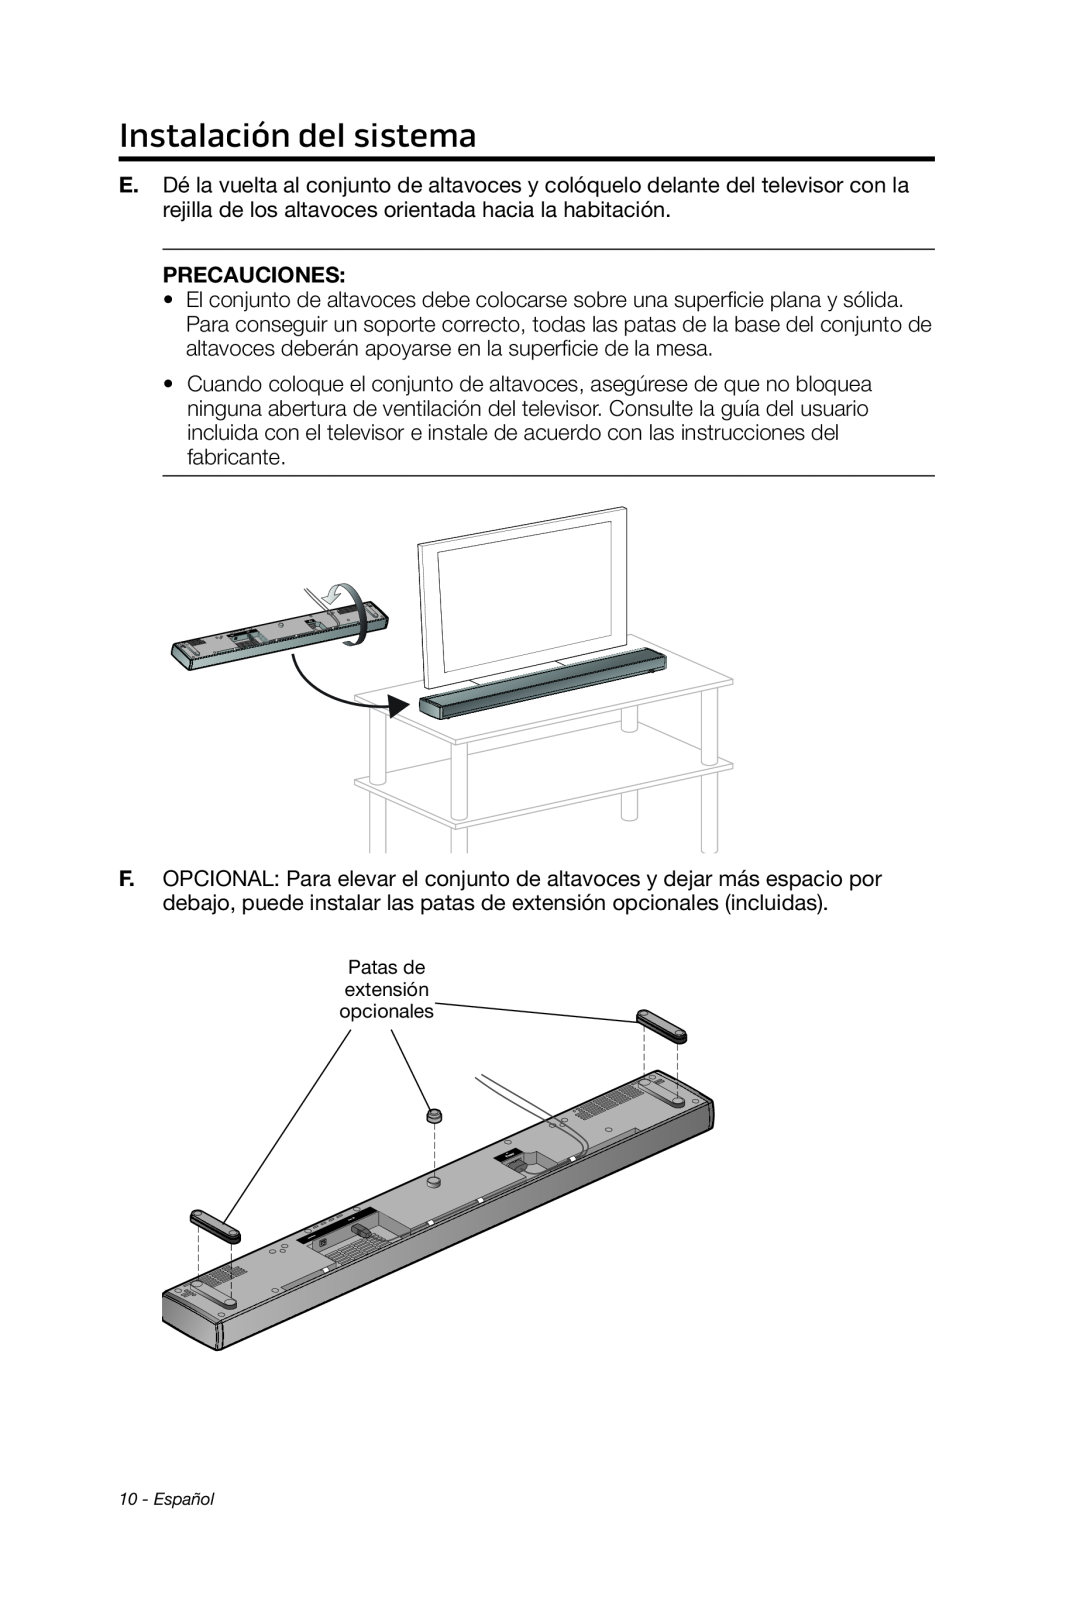 Bose 135 setup guide Instalación del sistema, Precauciones, Patas de extensión opcionales, Español 